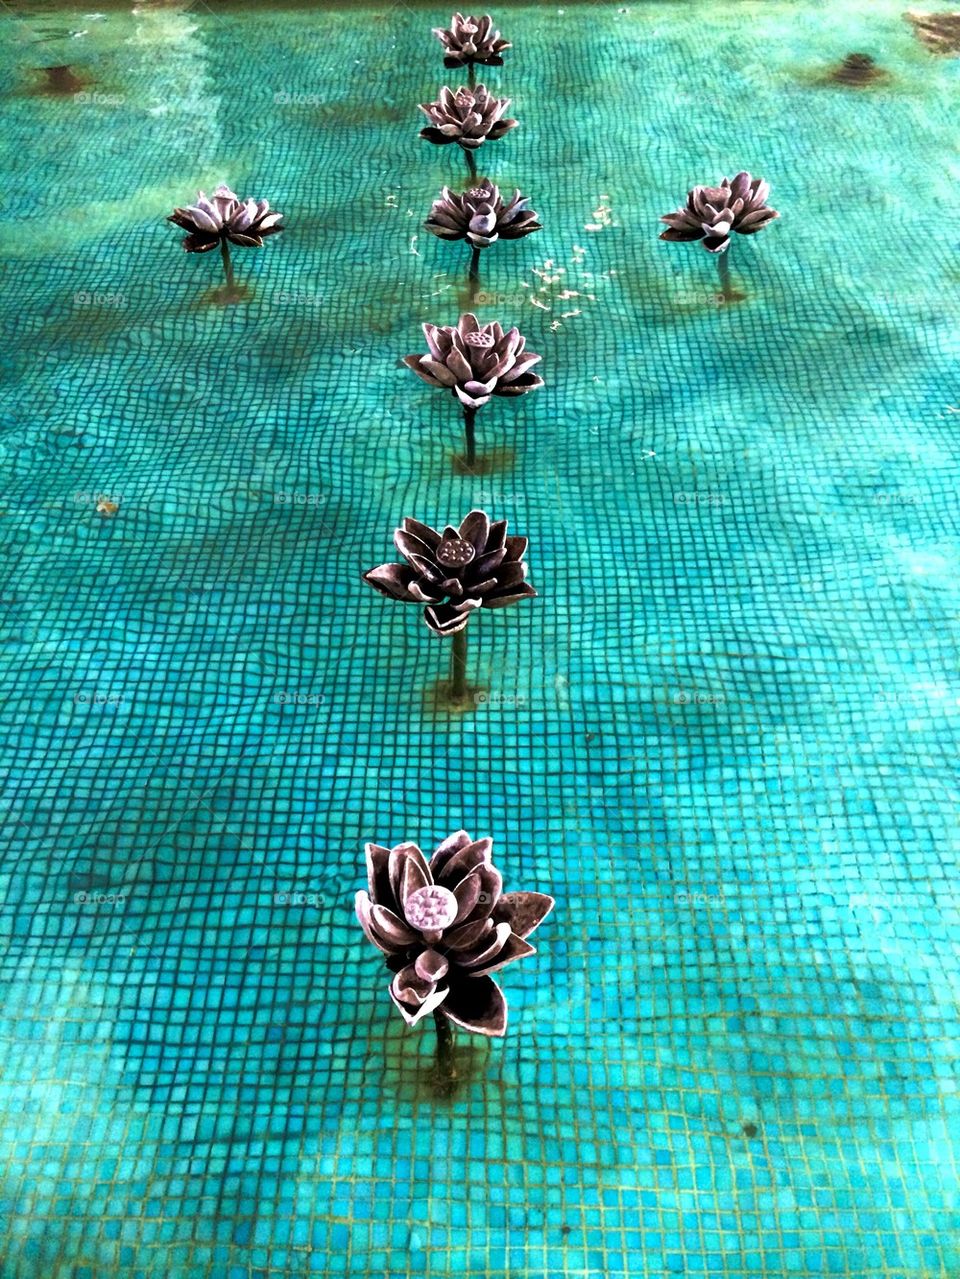 Lotus pool 